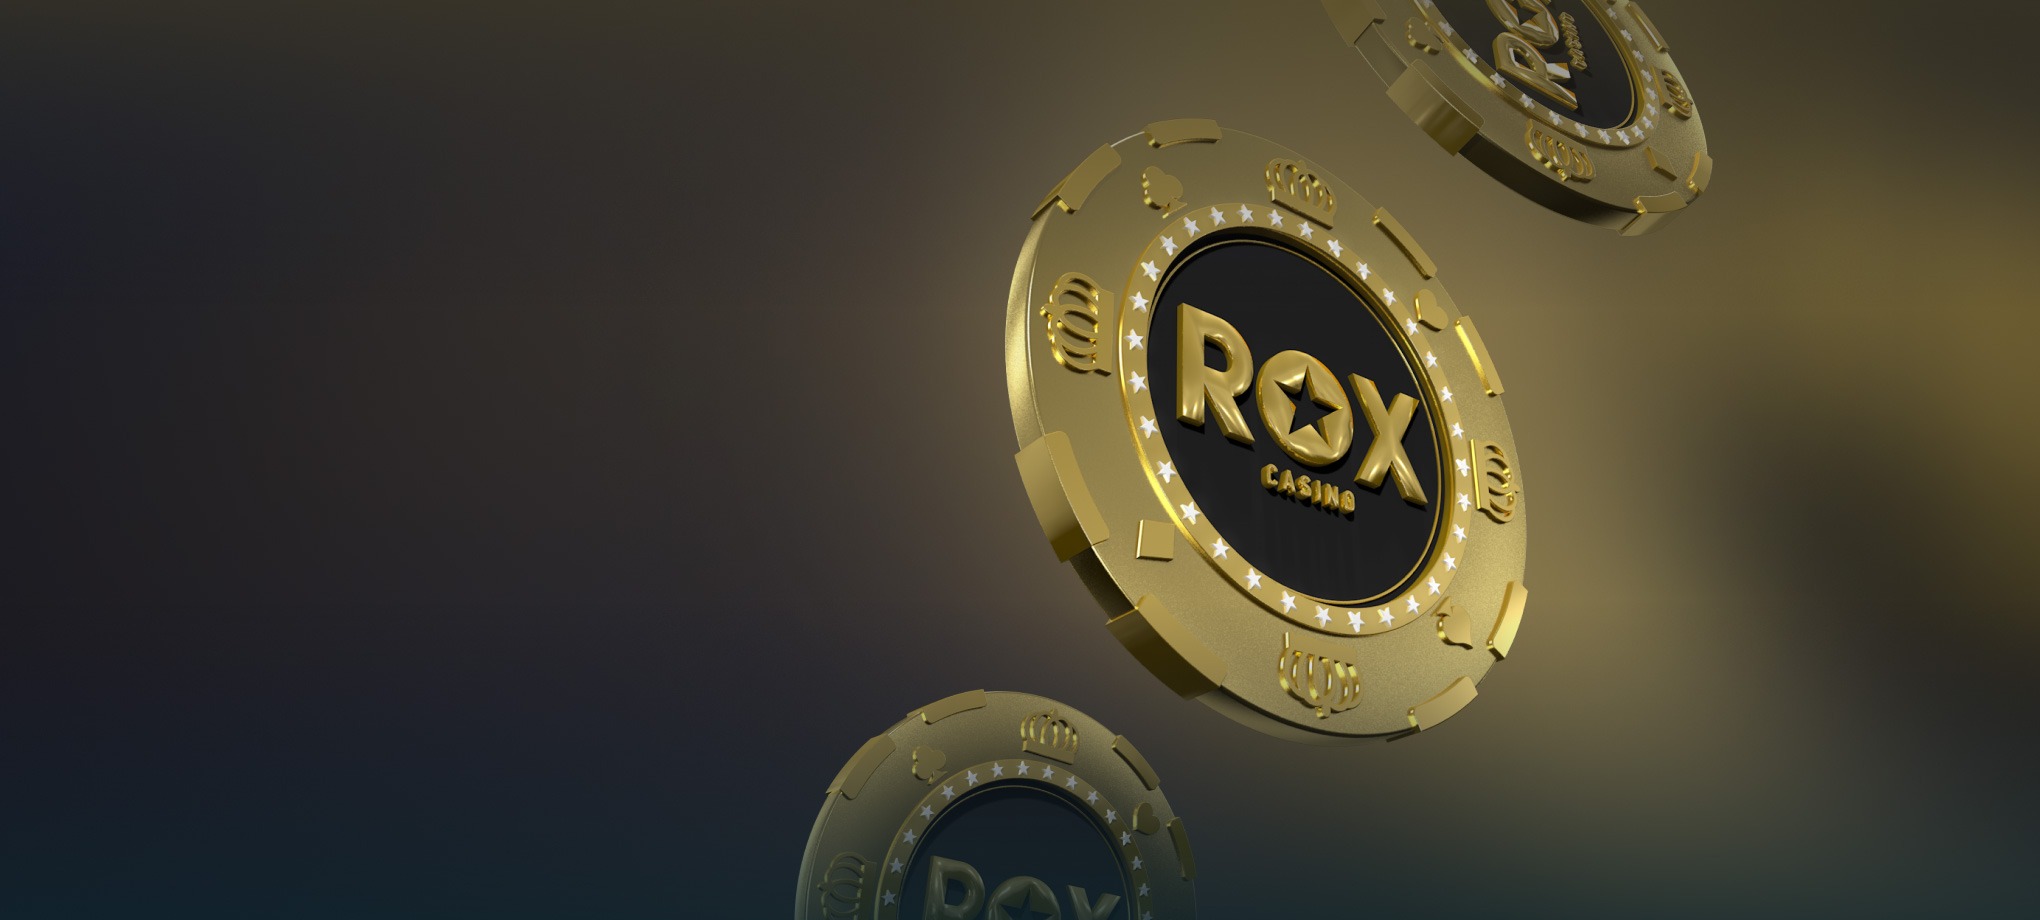 Rox casino зайти на официальный сайт